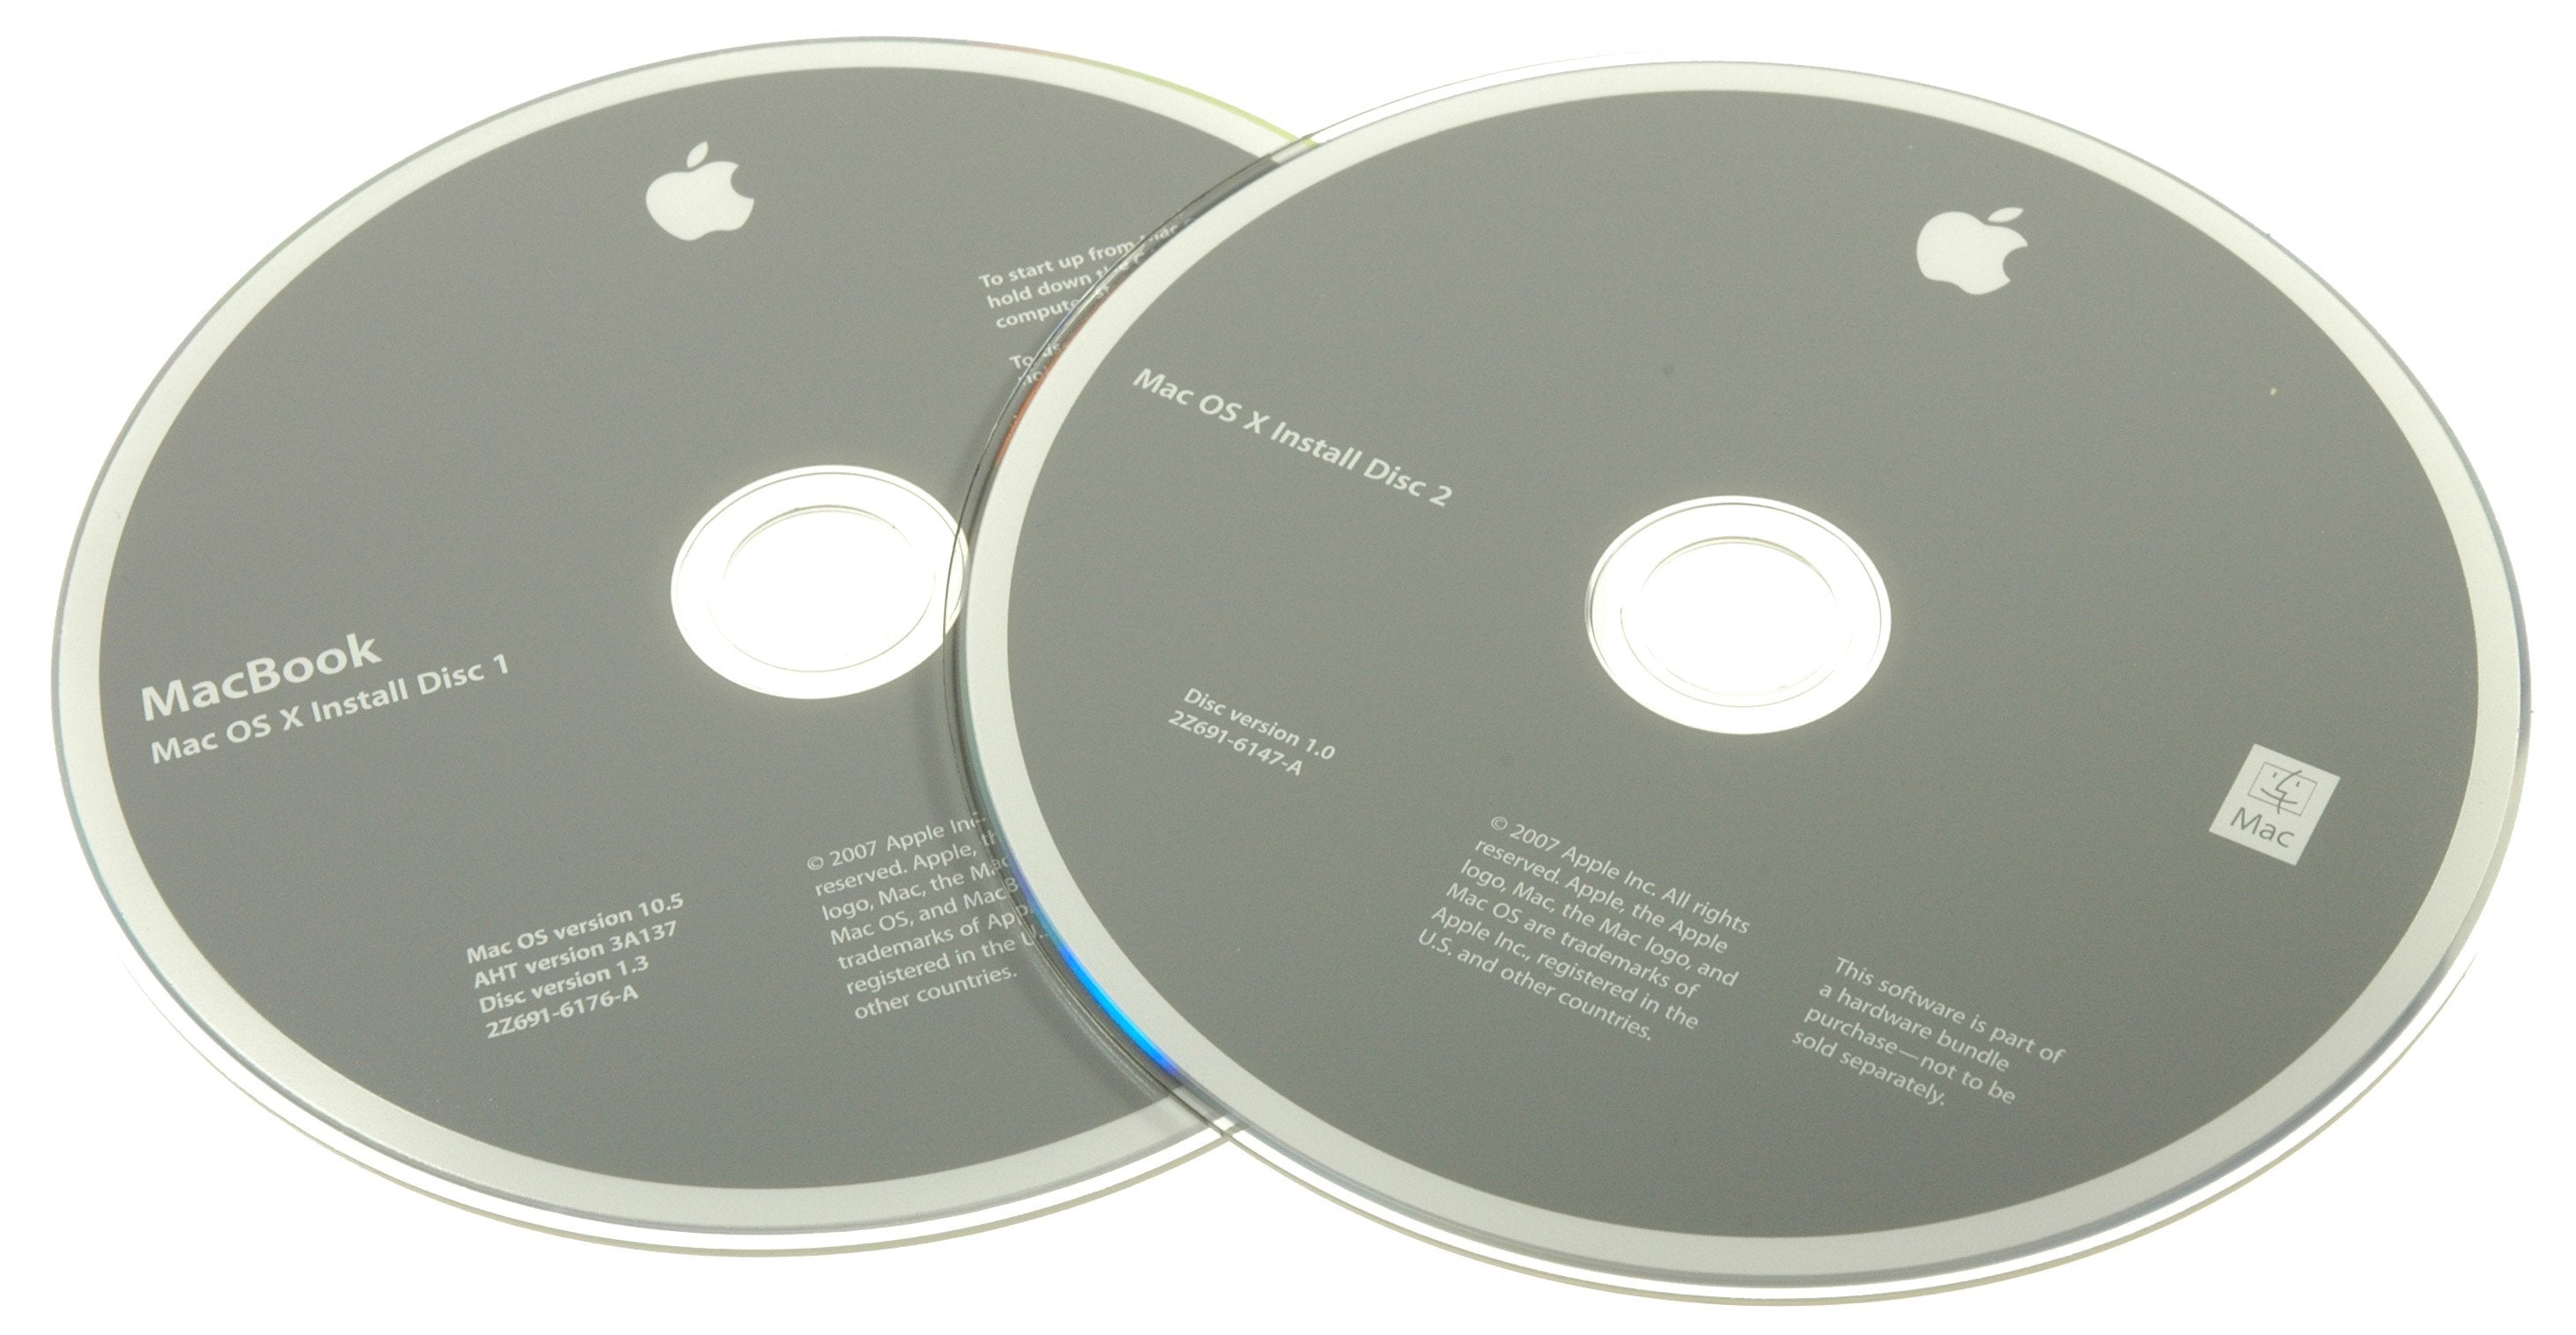 MacBook (Santa Rosa) Restore DVDs